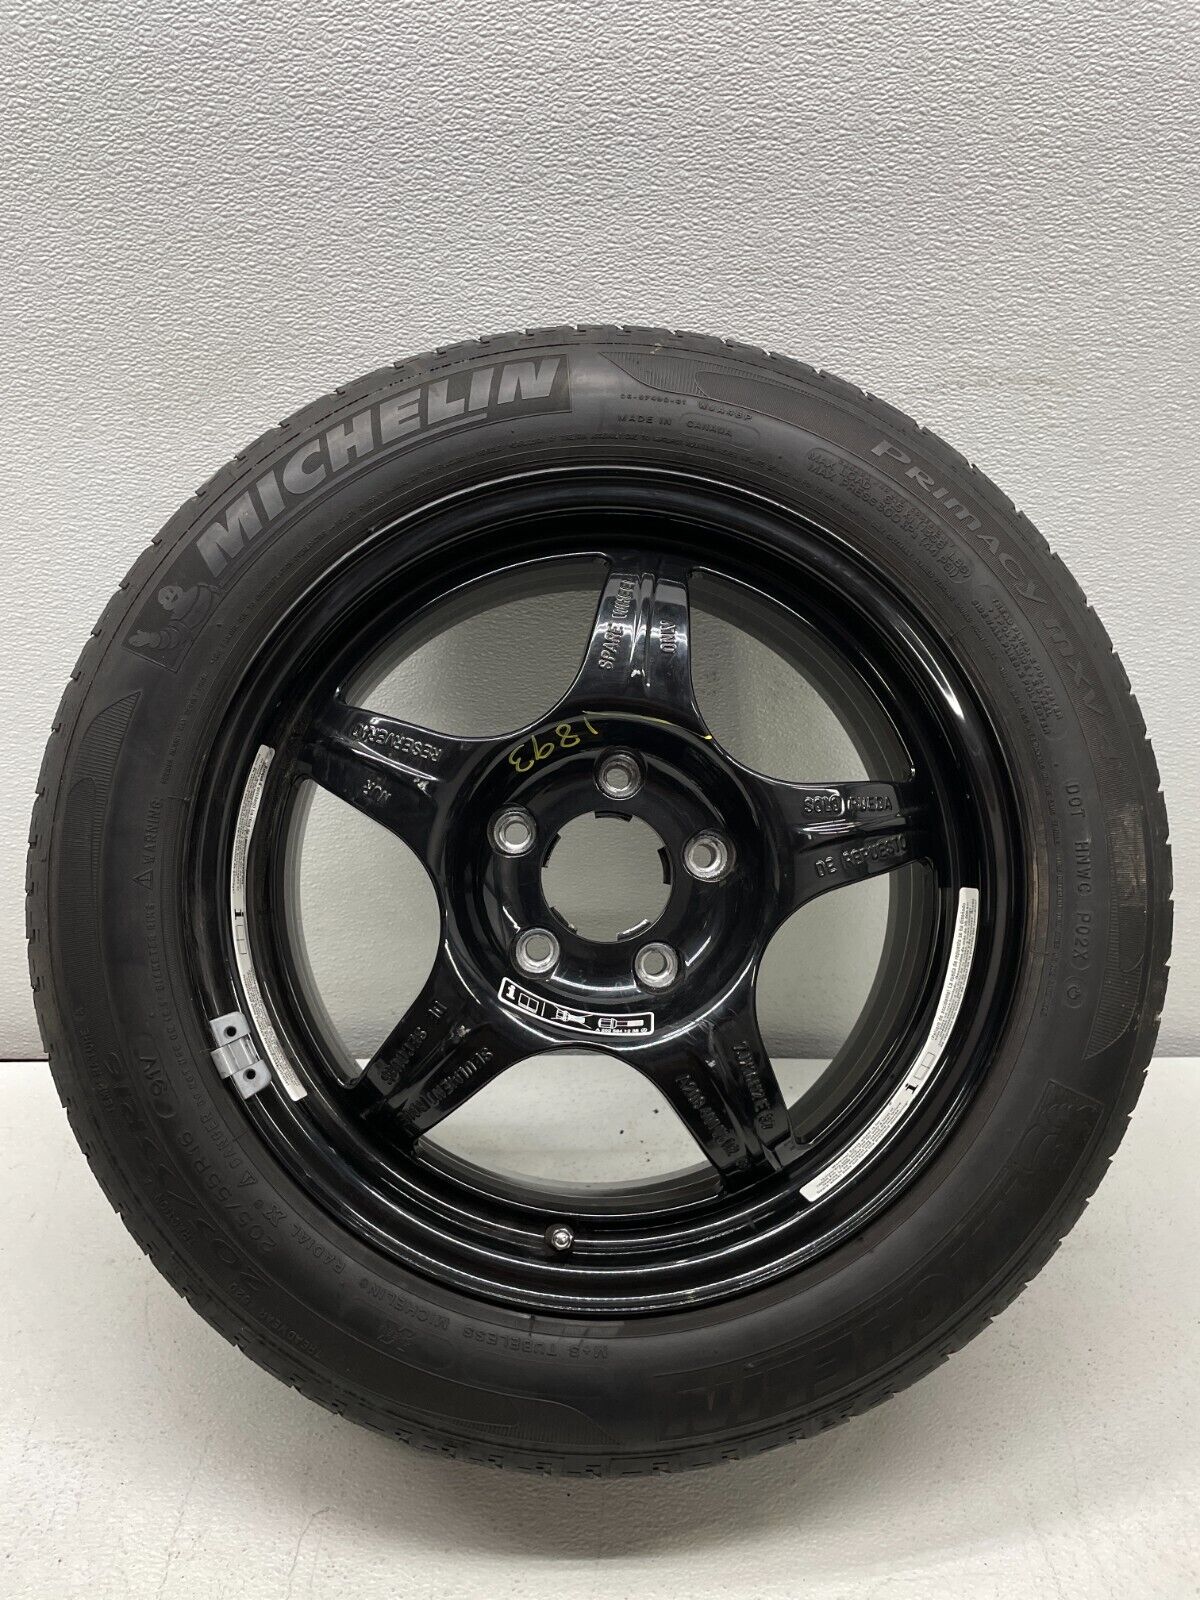 Mercedes W208 CLK320 Emergency Spare Tire Donut Rim 205 55 R16 16